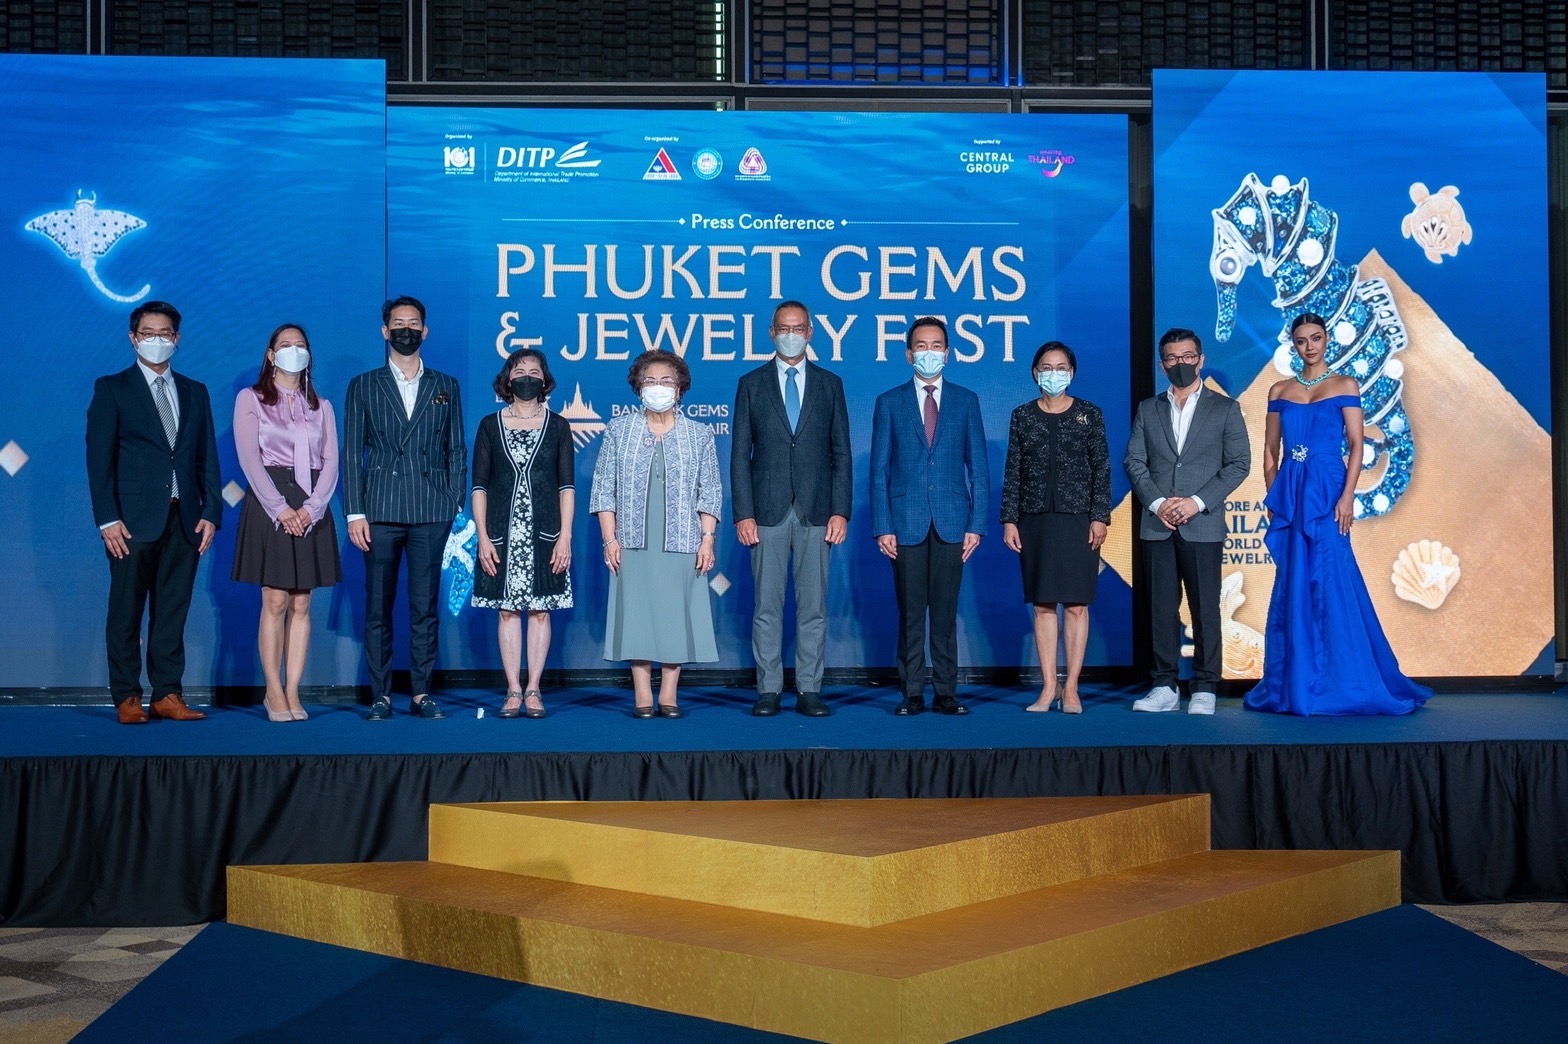 DITP พร้อมจัดงาน “Phuket Gems & Jewelry Fest”                                                                  8-12 ธ.ค. ’64 นี้ ณ จังหวัดภูเก็ต                                        ตั้งเป้ากระตุ้นเศรษฐกิจและมูลค่าส่งออกสินค้าอัญมณีและเครื่องประดับไทย